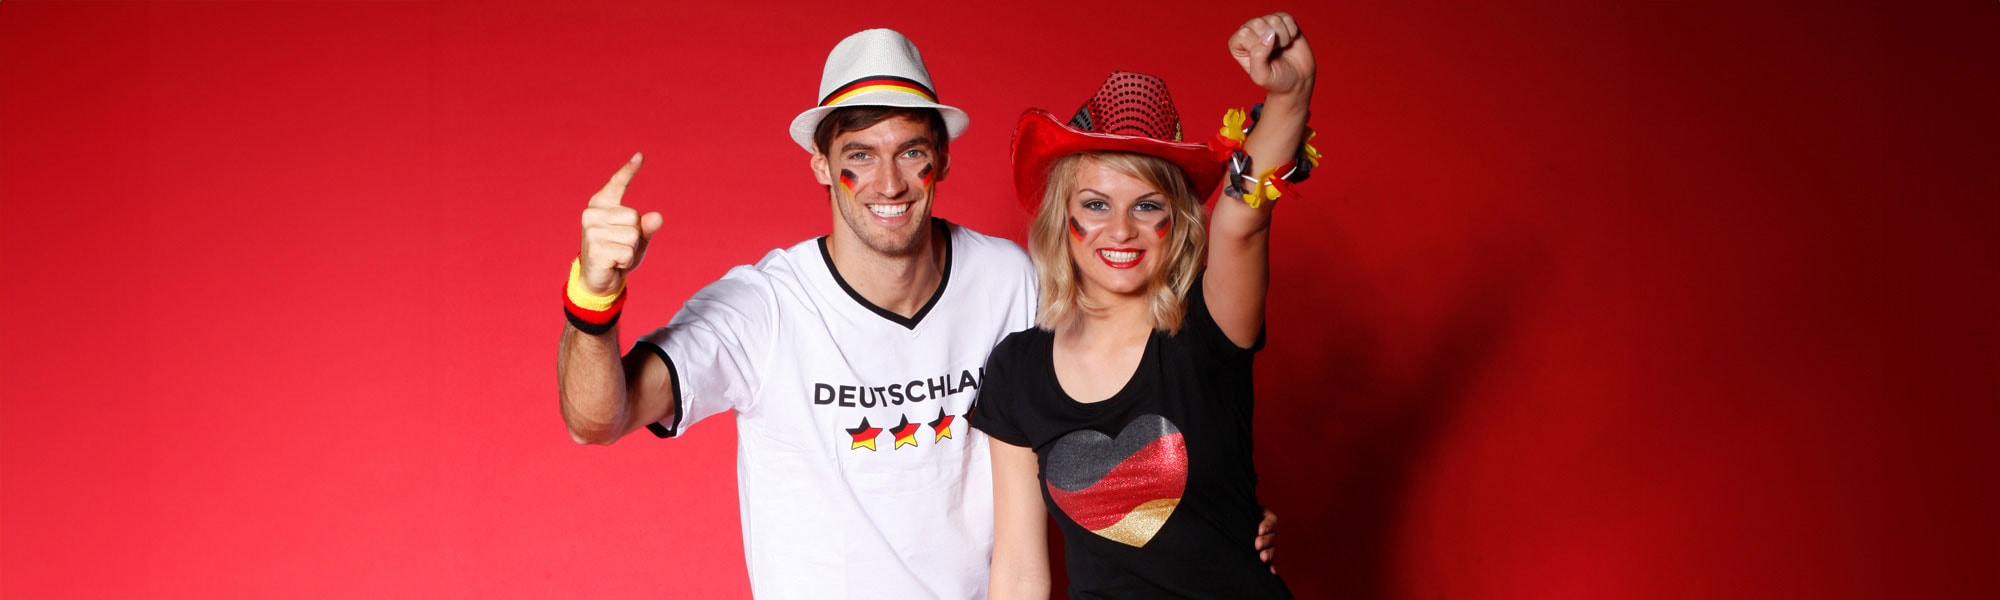 Deutschland Kostüme und Fanartikel für Paare